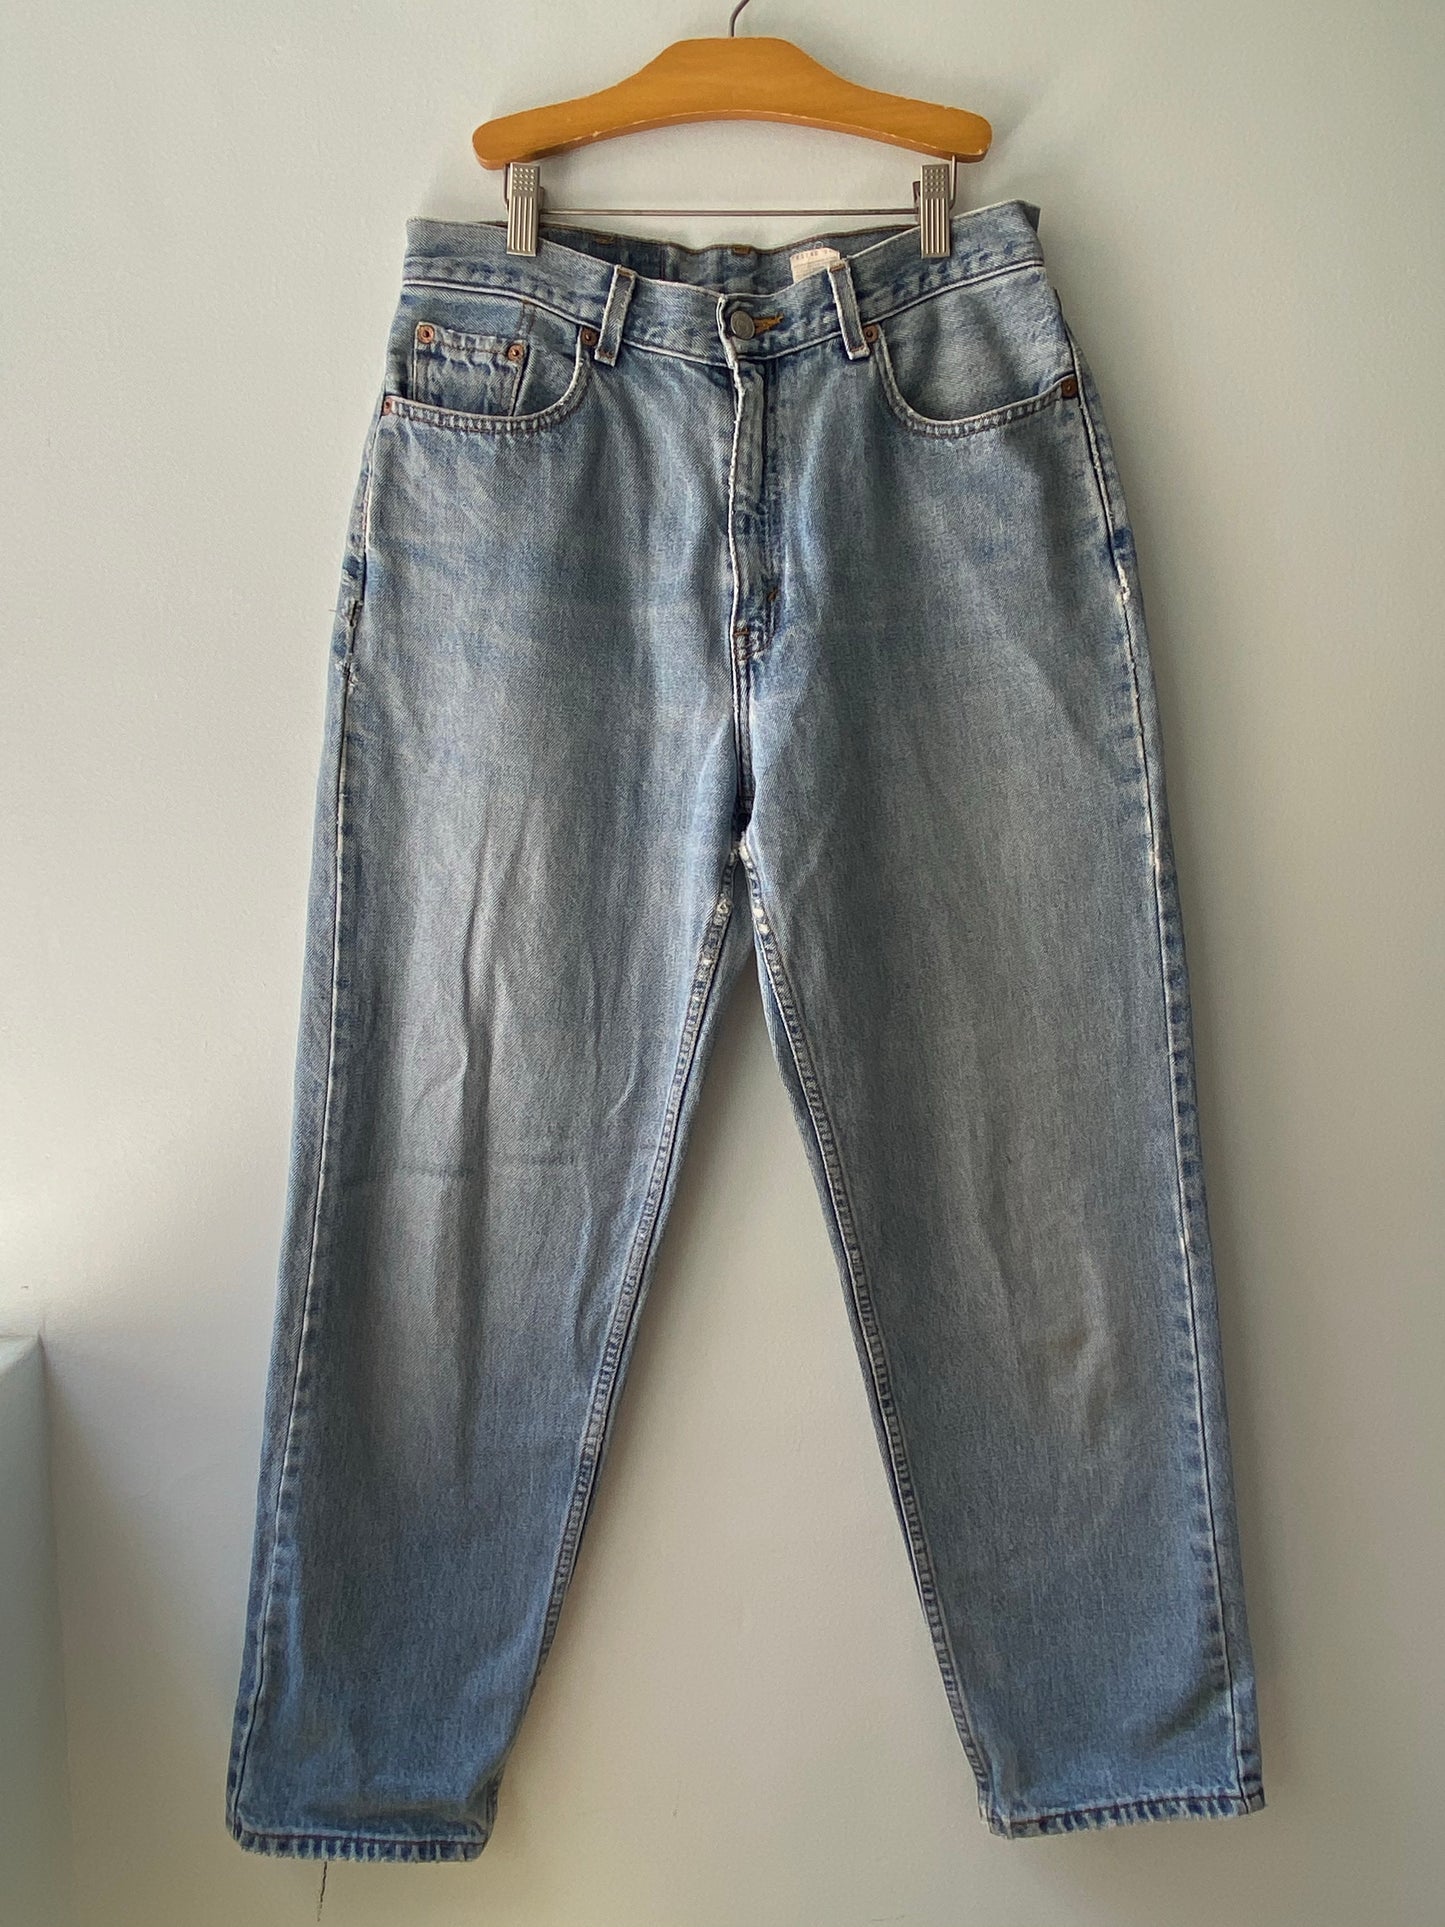 Levi's 560 Jeans